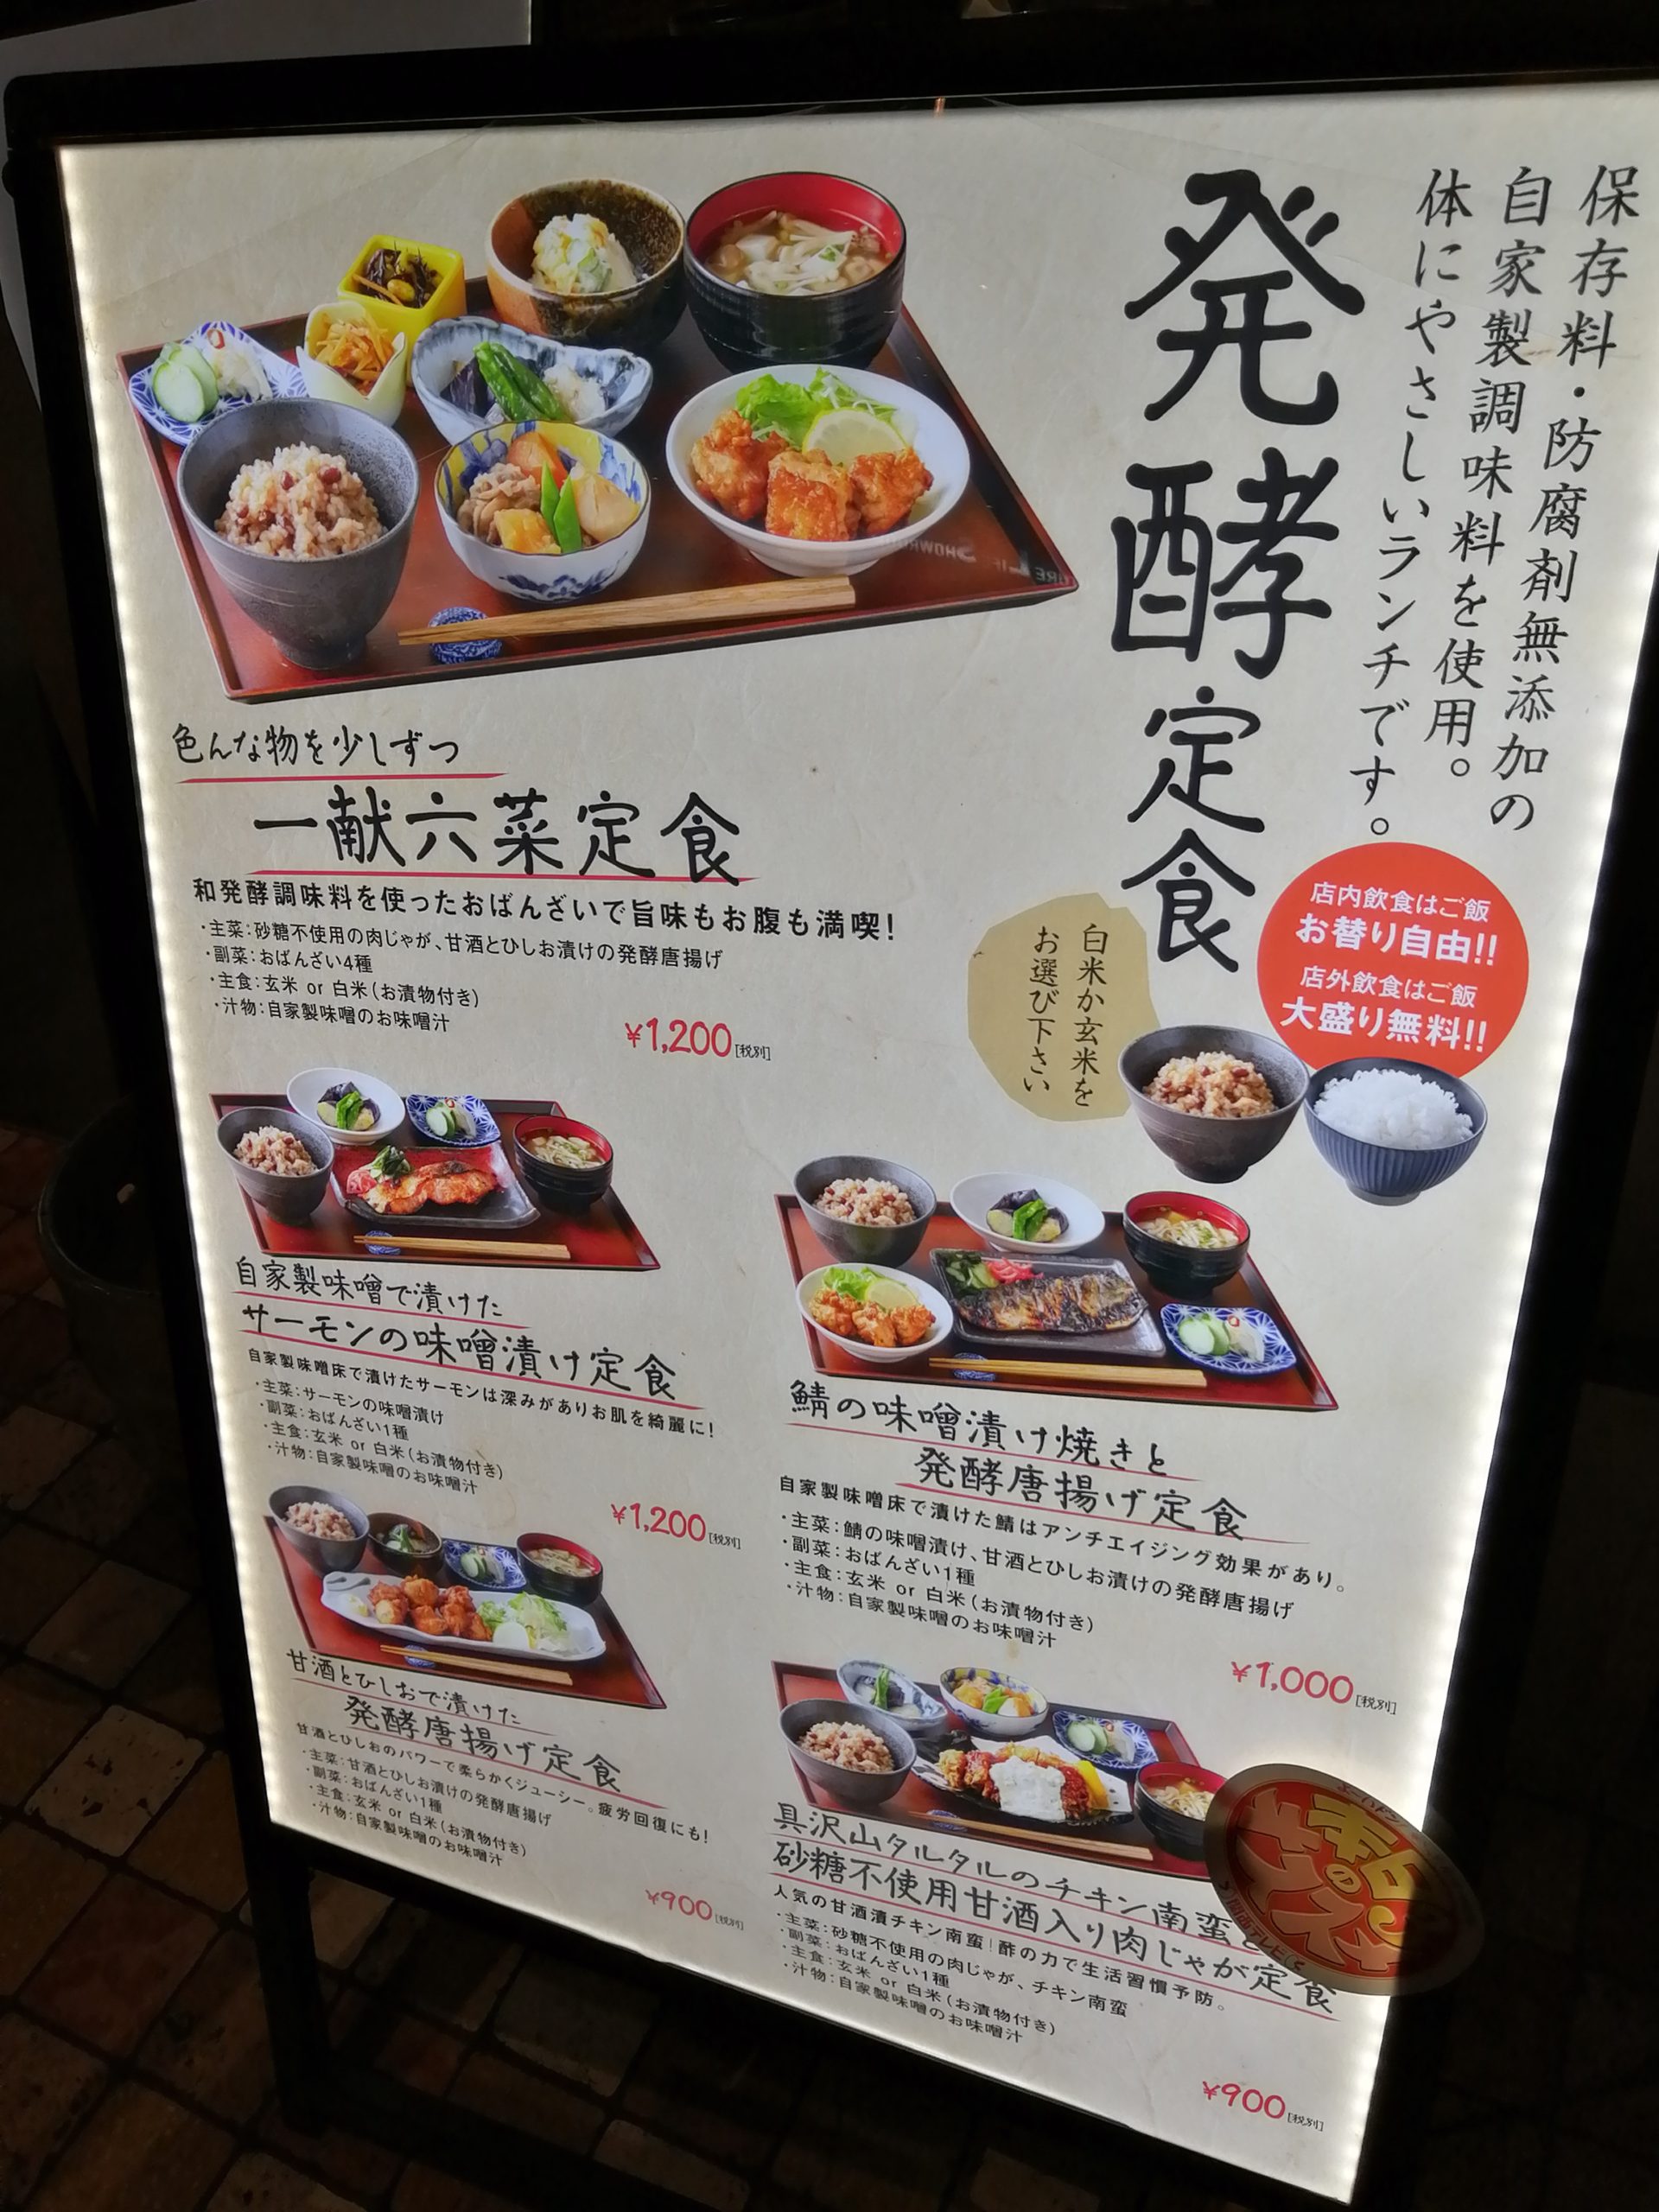 ご飯を生贄にアルコールを召喚 グランフロント大阪 一献三菜でランチ しげしげブログ